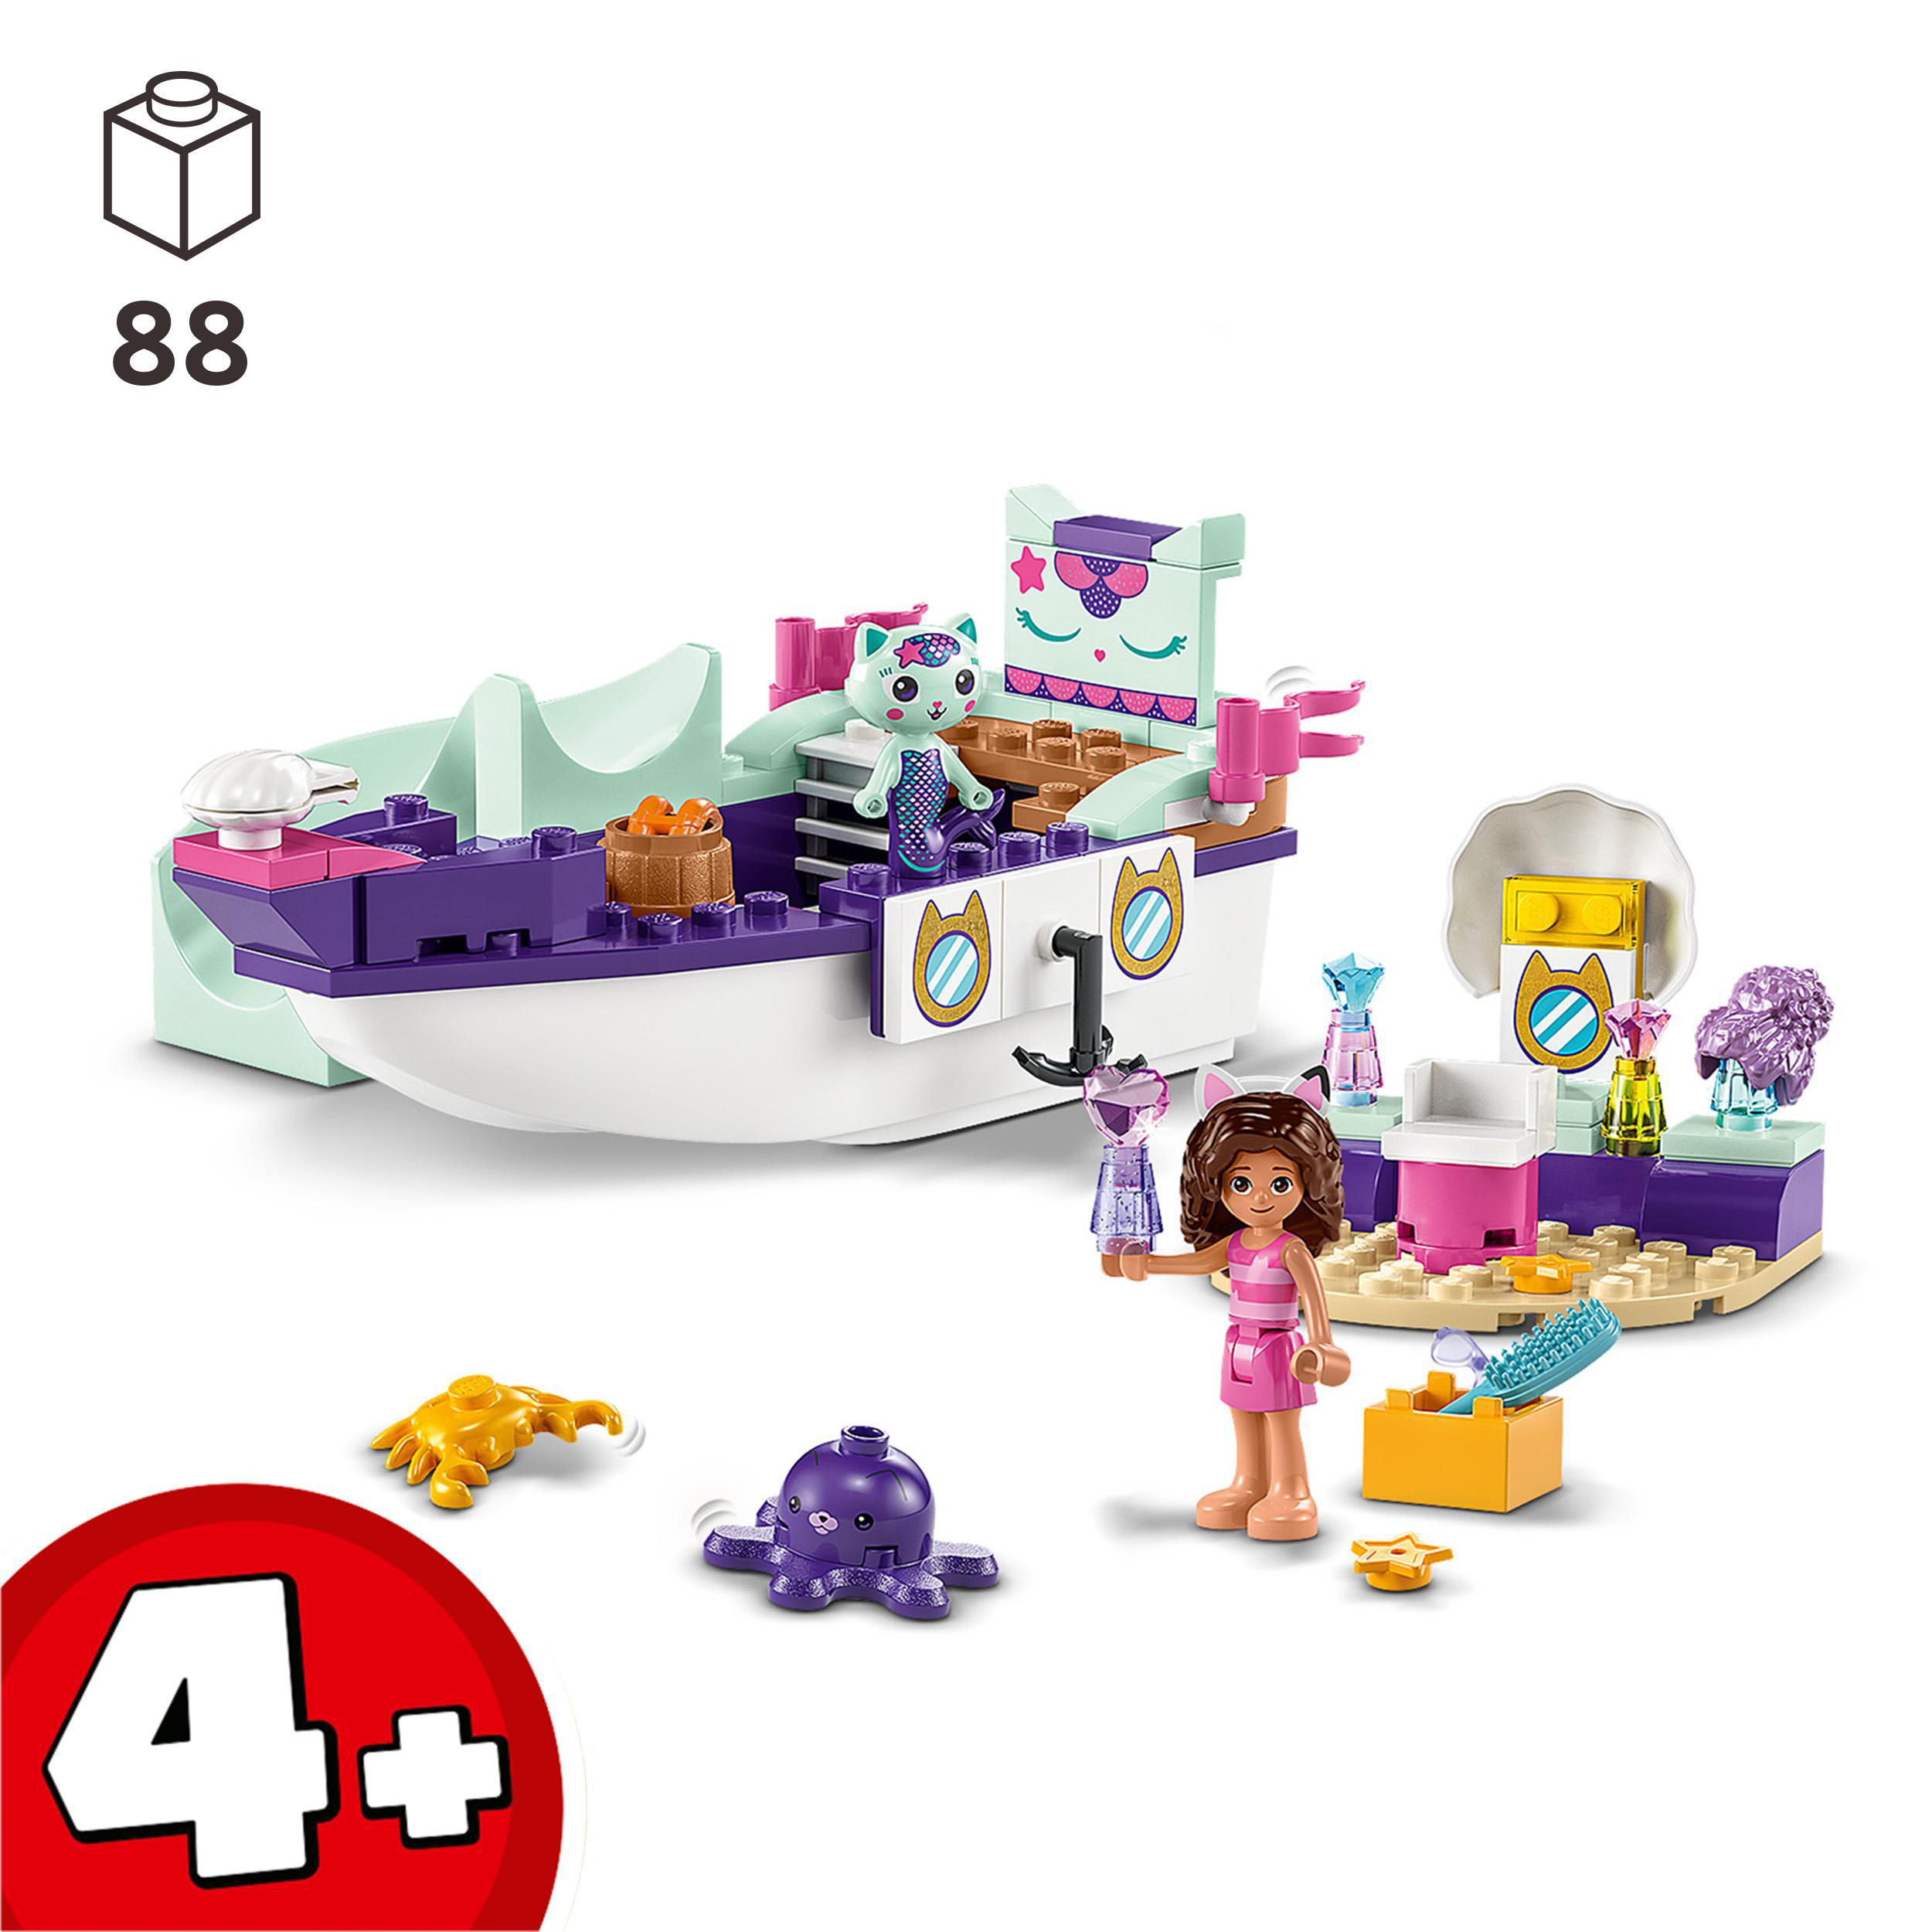 LEGO Mehrfarbig Meerkätzchens Gabby\'s und 10786 Bausatz, Schiff Dollhouse Spa